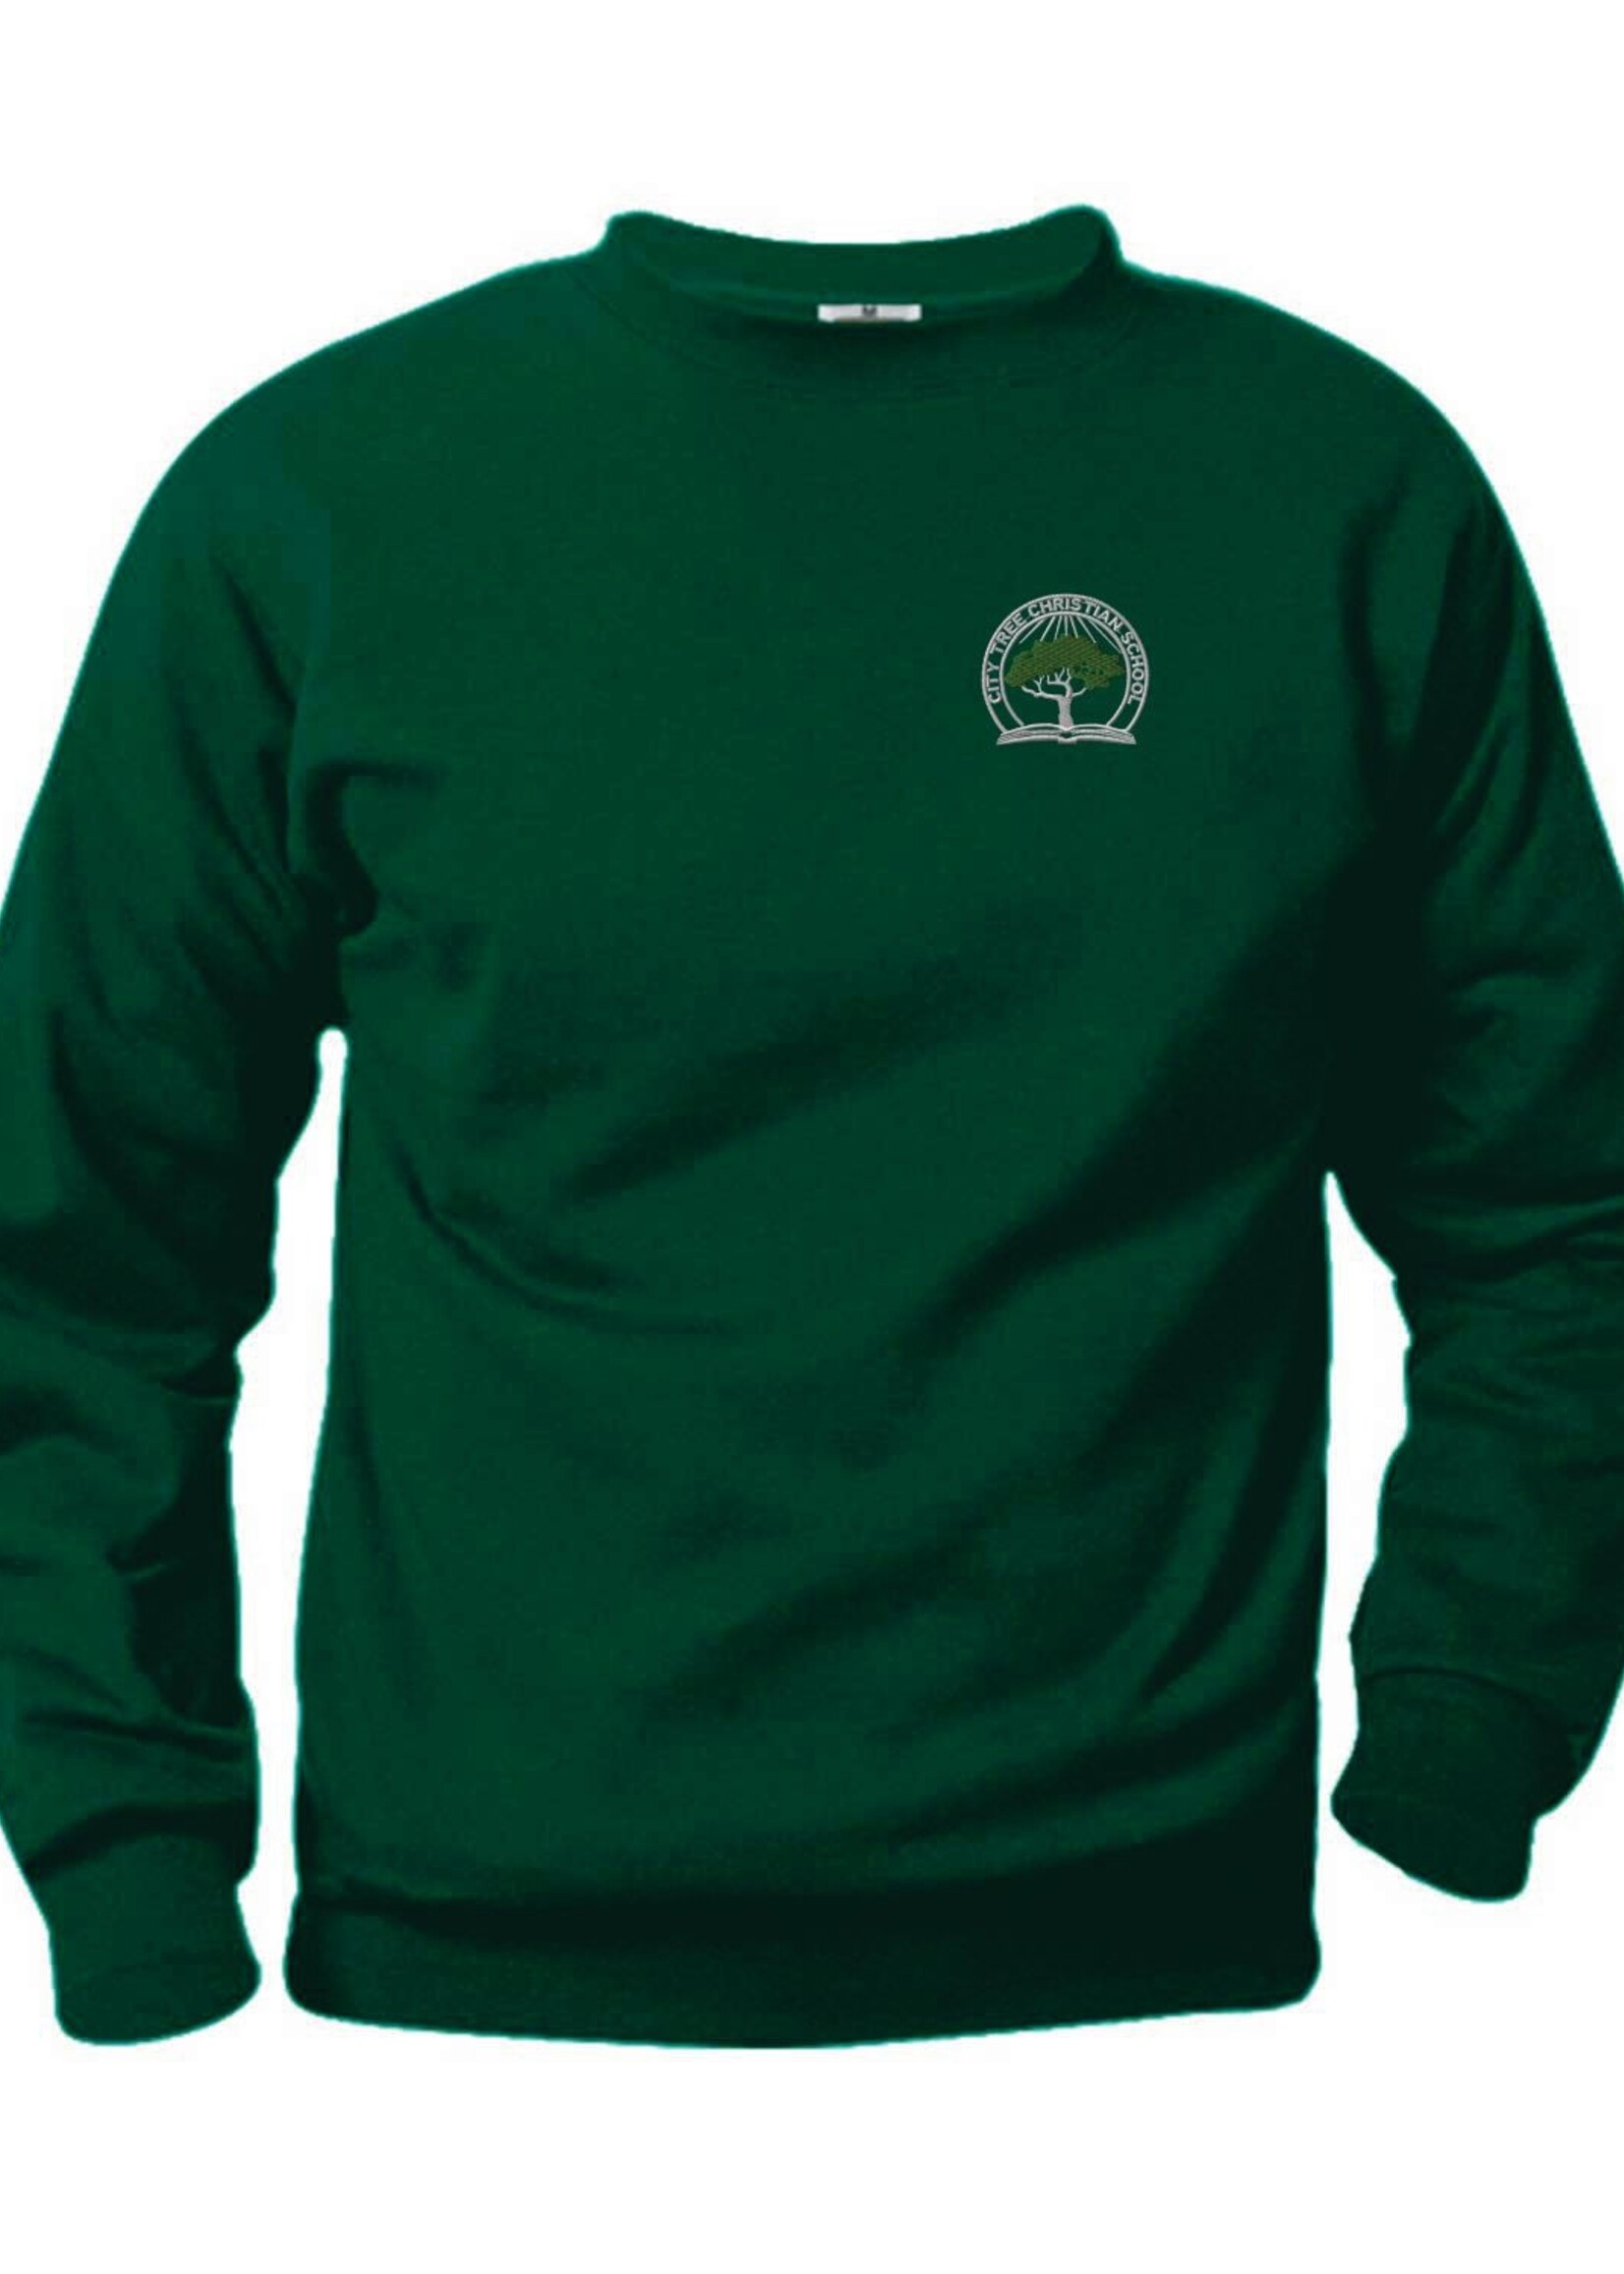 CTCS Fleece Crewneck Sweatshirt